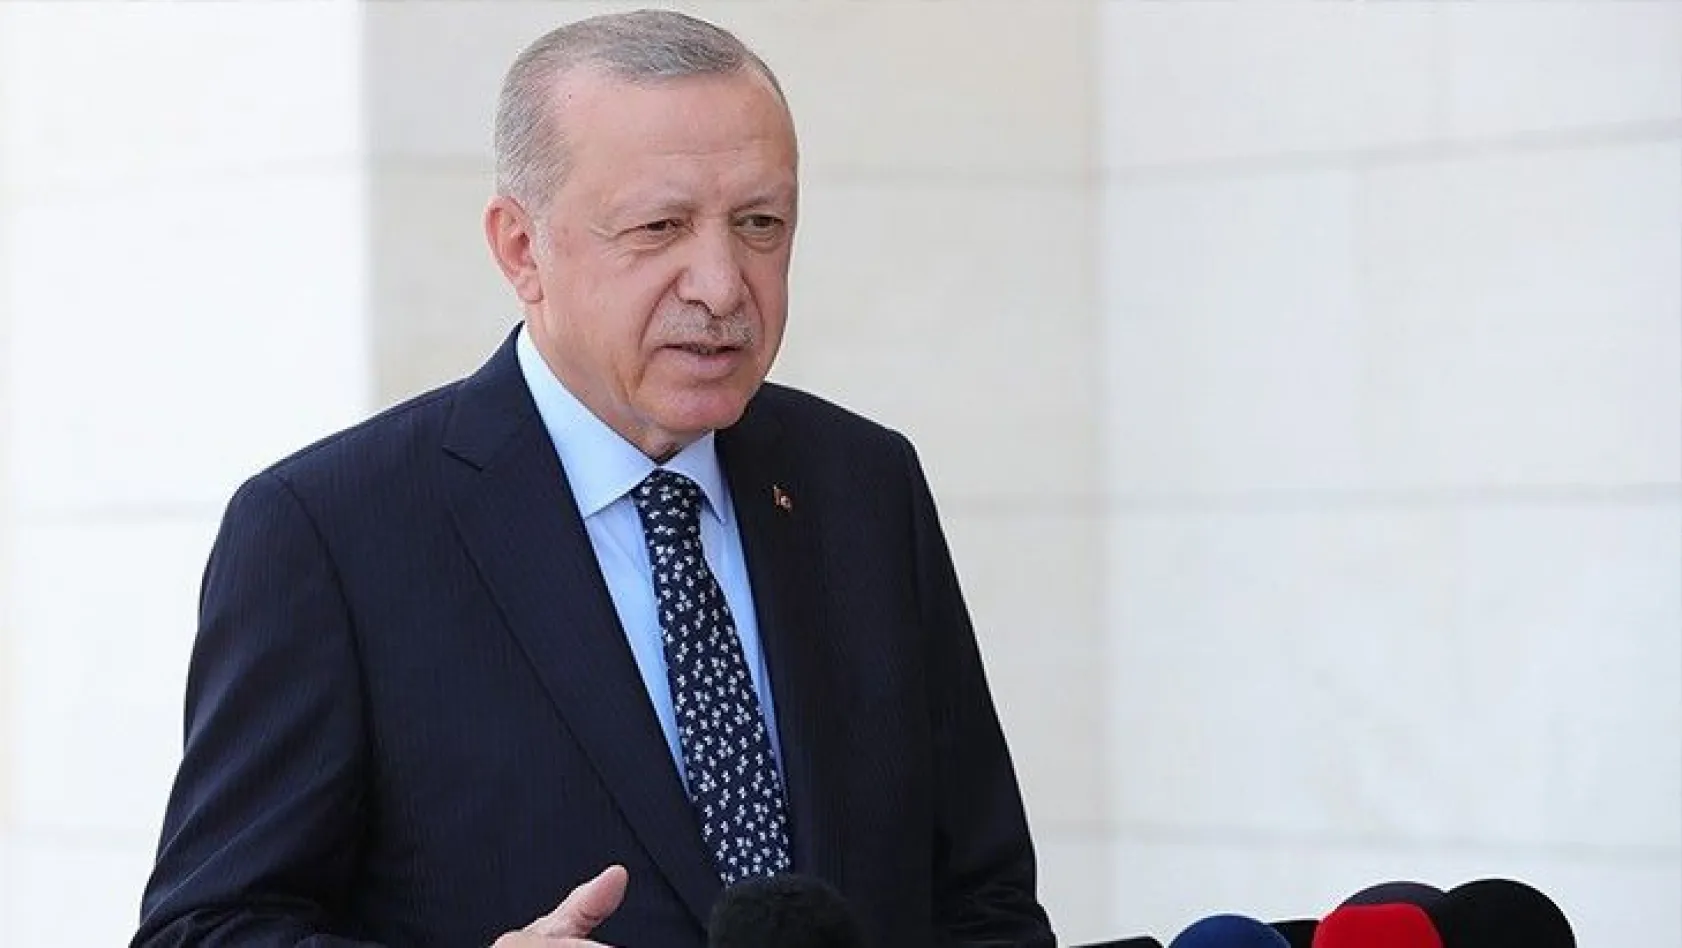 Cumhurbaşkanı Erdoğan, kentsel dönüşüm verilerini paylaştı